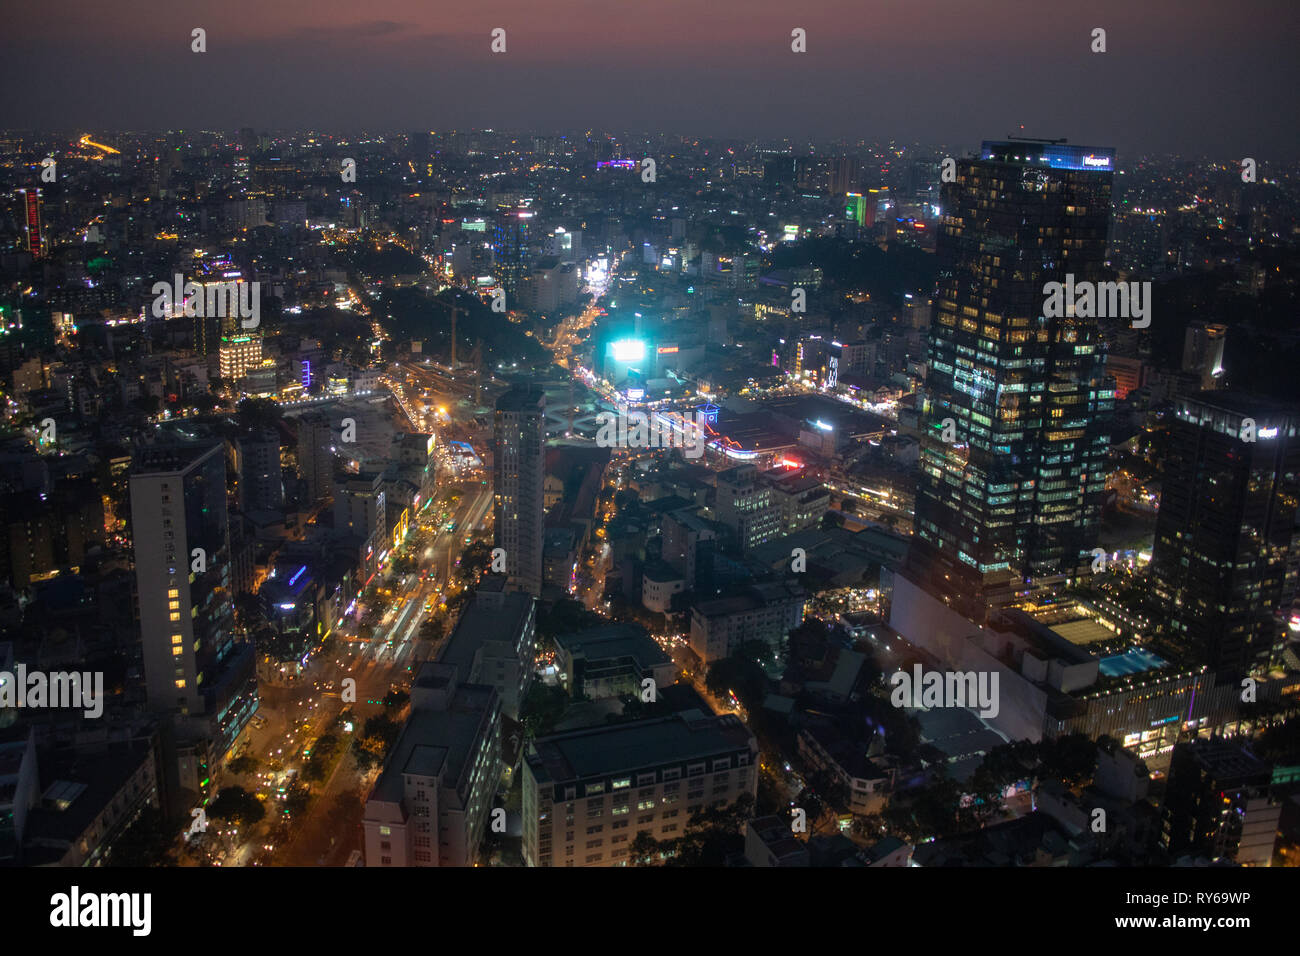 Le centre-ville de Saigon, Ho Chi Minh City, Vietnam, le mardi 12 mars 2019. Chaude soirée avec les bas de 28 degrés la nuit. Ho Chi Minh est la plus grande ville au Vietnam avec 9 millions de résidents. Credit : WansfordPhoto/Alamy Live News Banque D'Images